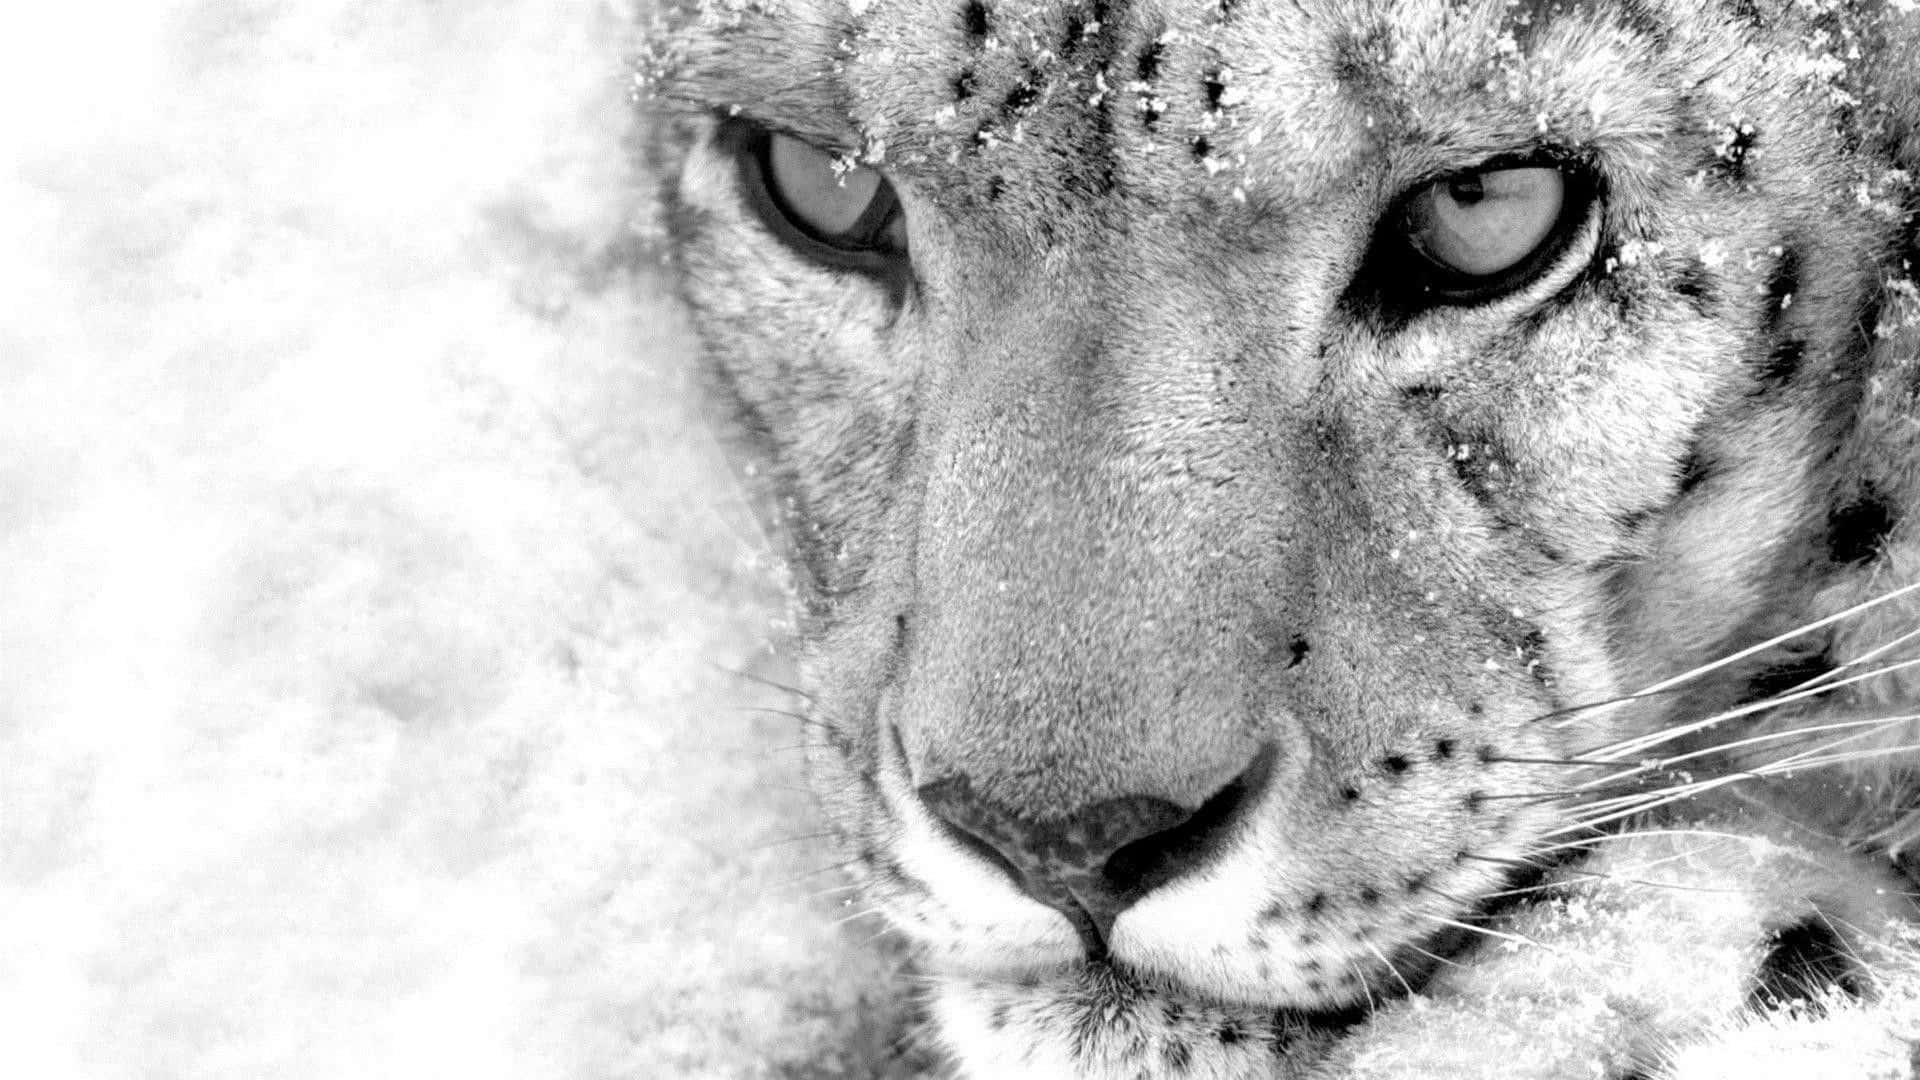 Unhermoso Leopardo De Las Nieves En Su Entorno Prístino. Fondo de pantalla